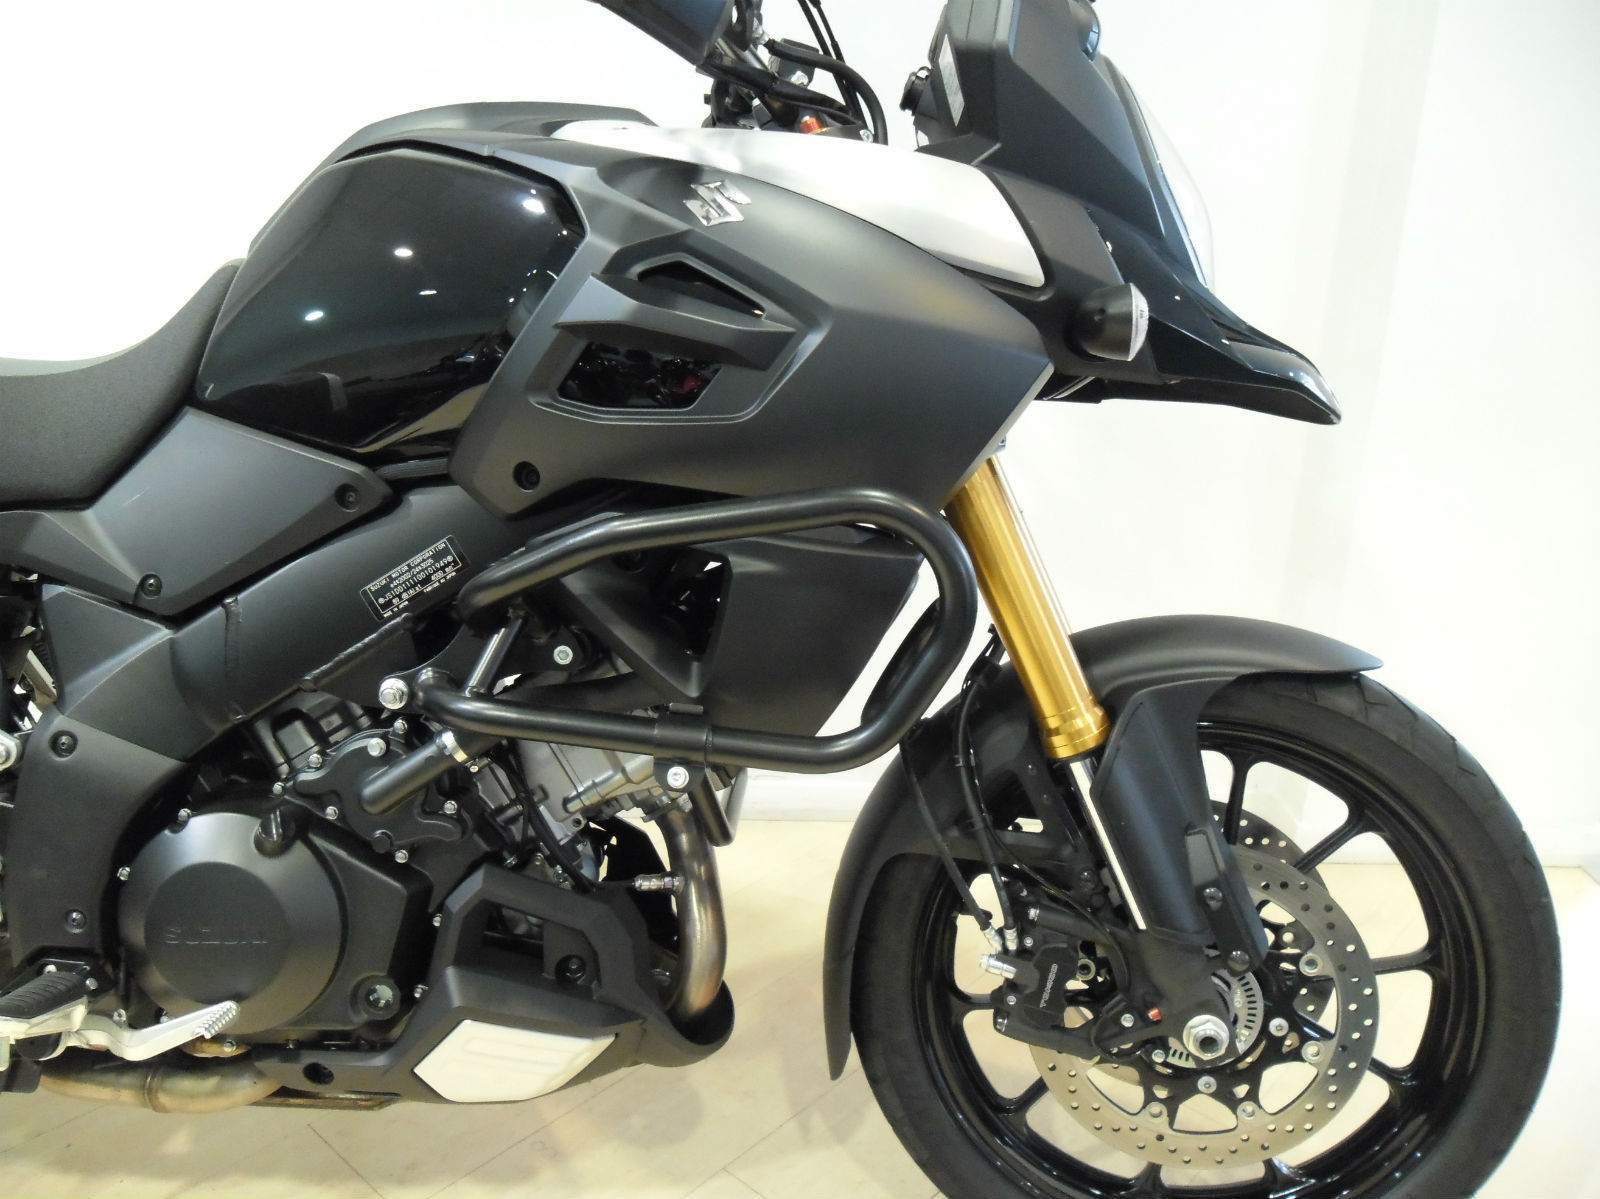 Suzuki DL 1000 VStrom 2014 1000cc Adventure Motorcycle